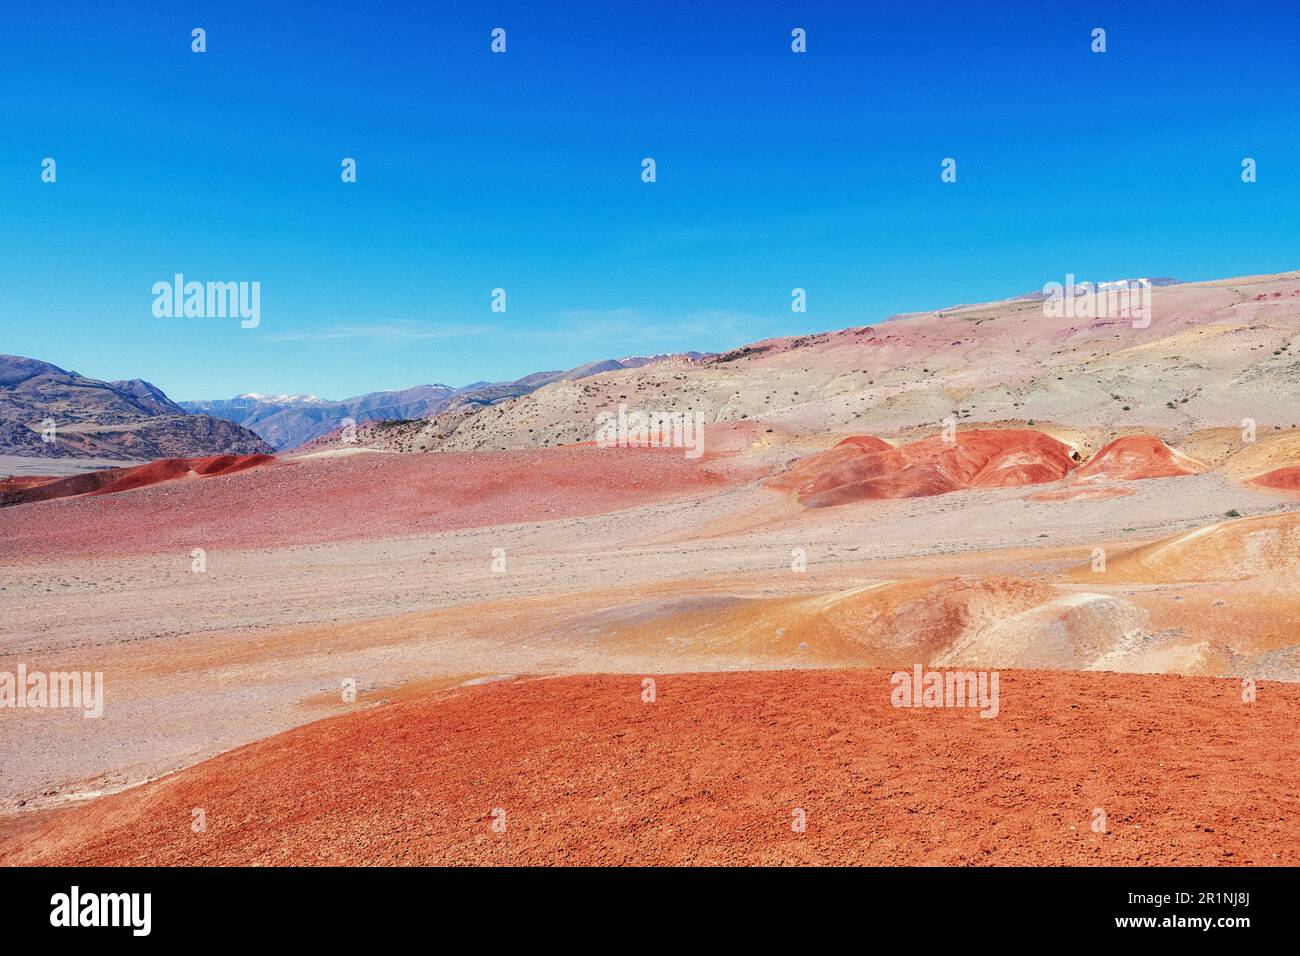 Wüstenfelsen und Sand, die wie Marsoberfläche aussehen. Berghügel mit trockenen Hintergründen Stockfoto